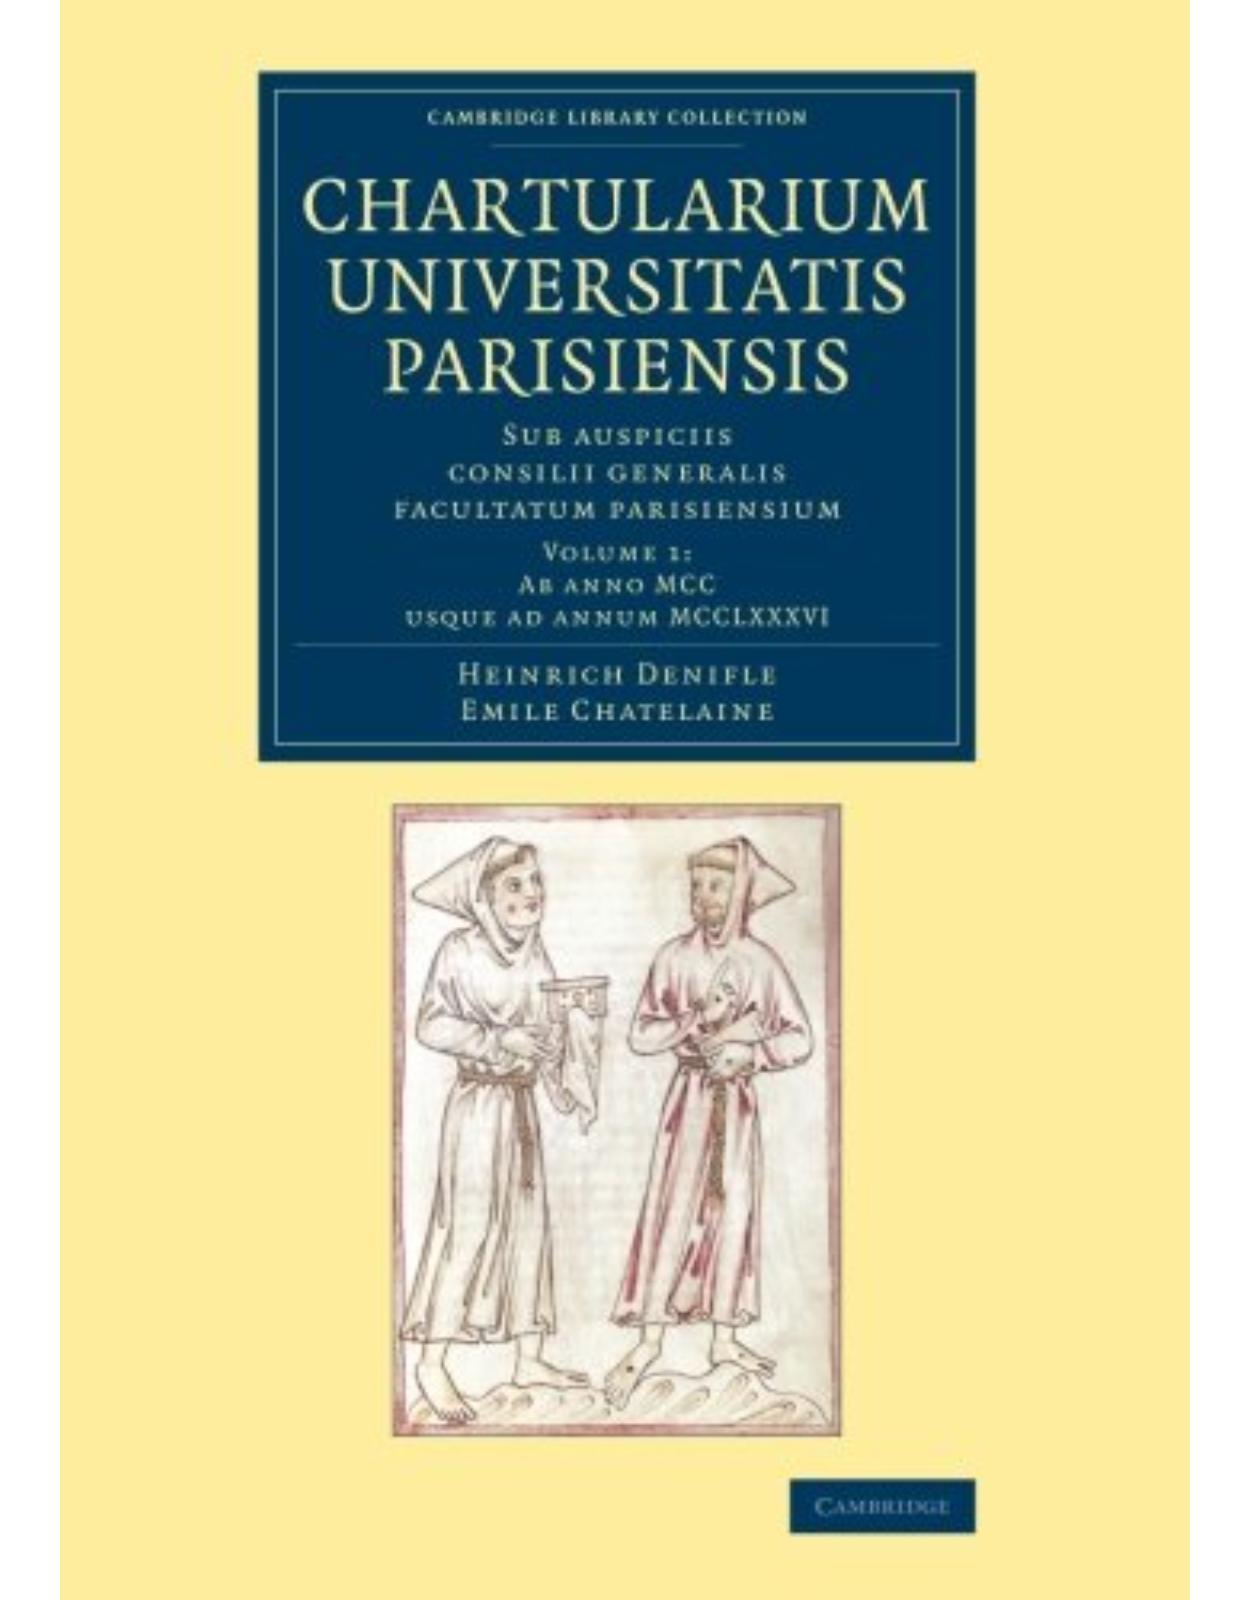 Chartularium Universitatis Parisiensis: Volume 1, Ab anno MCC usque ad annum MCCLXXXVI: Sub auspiciis consilii generalis facultatum parisiensium (Cambridge Library Collection - Medieval History) (Latin)